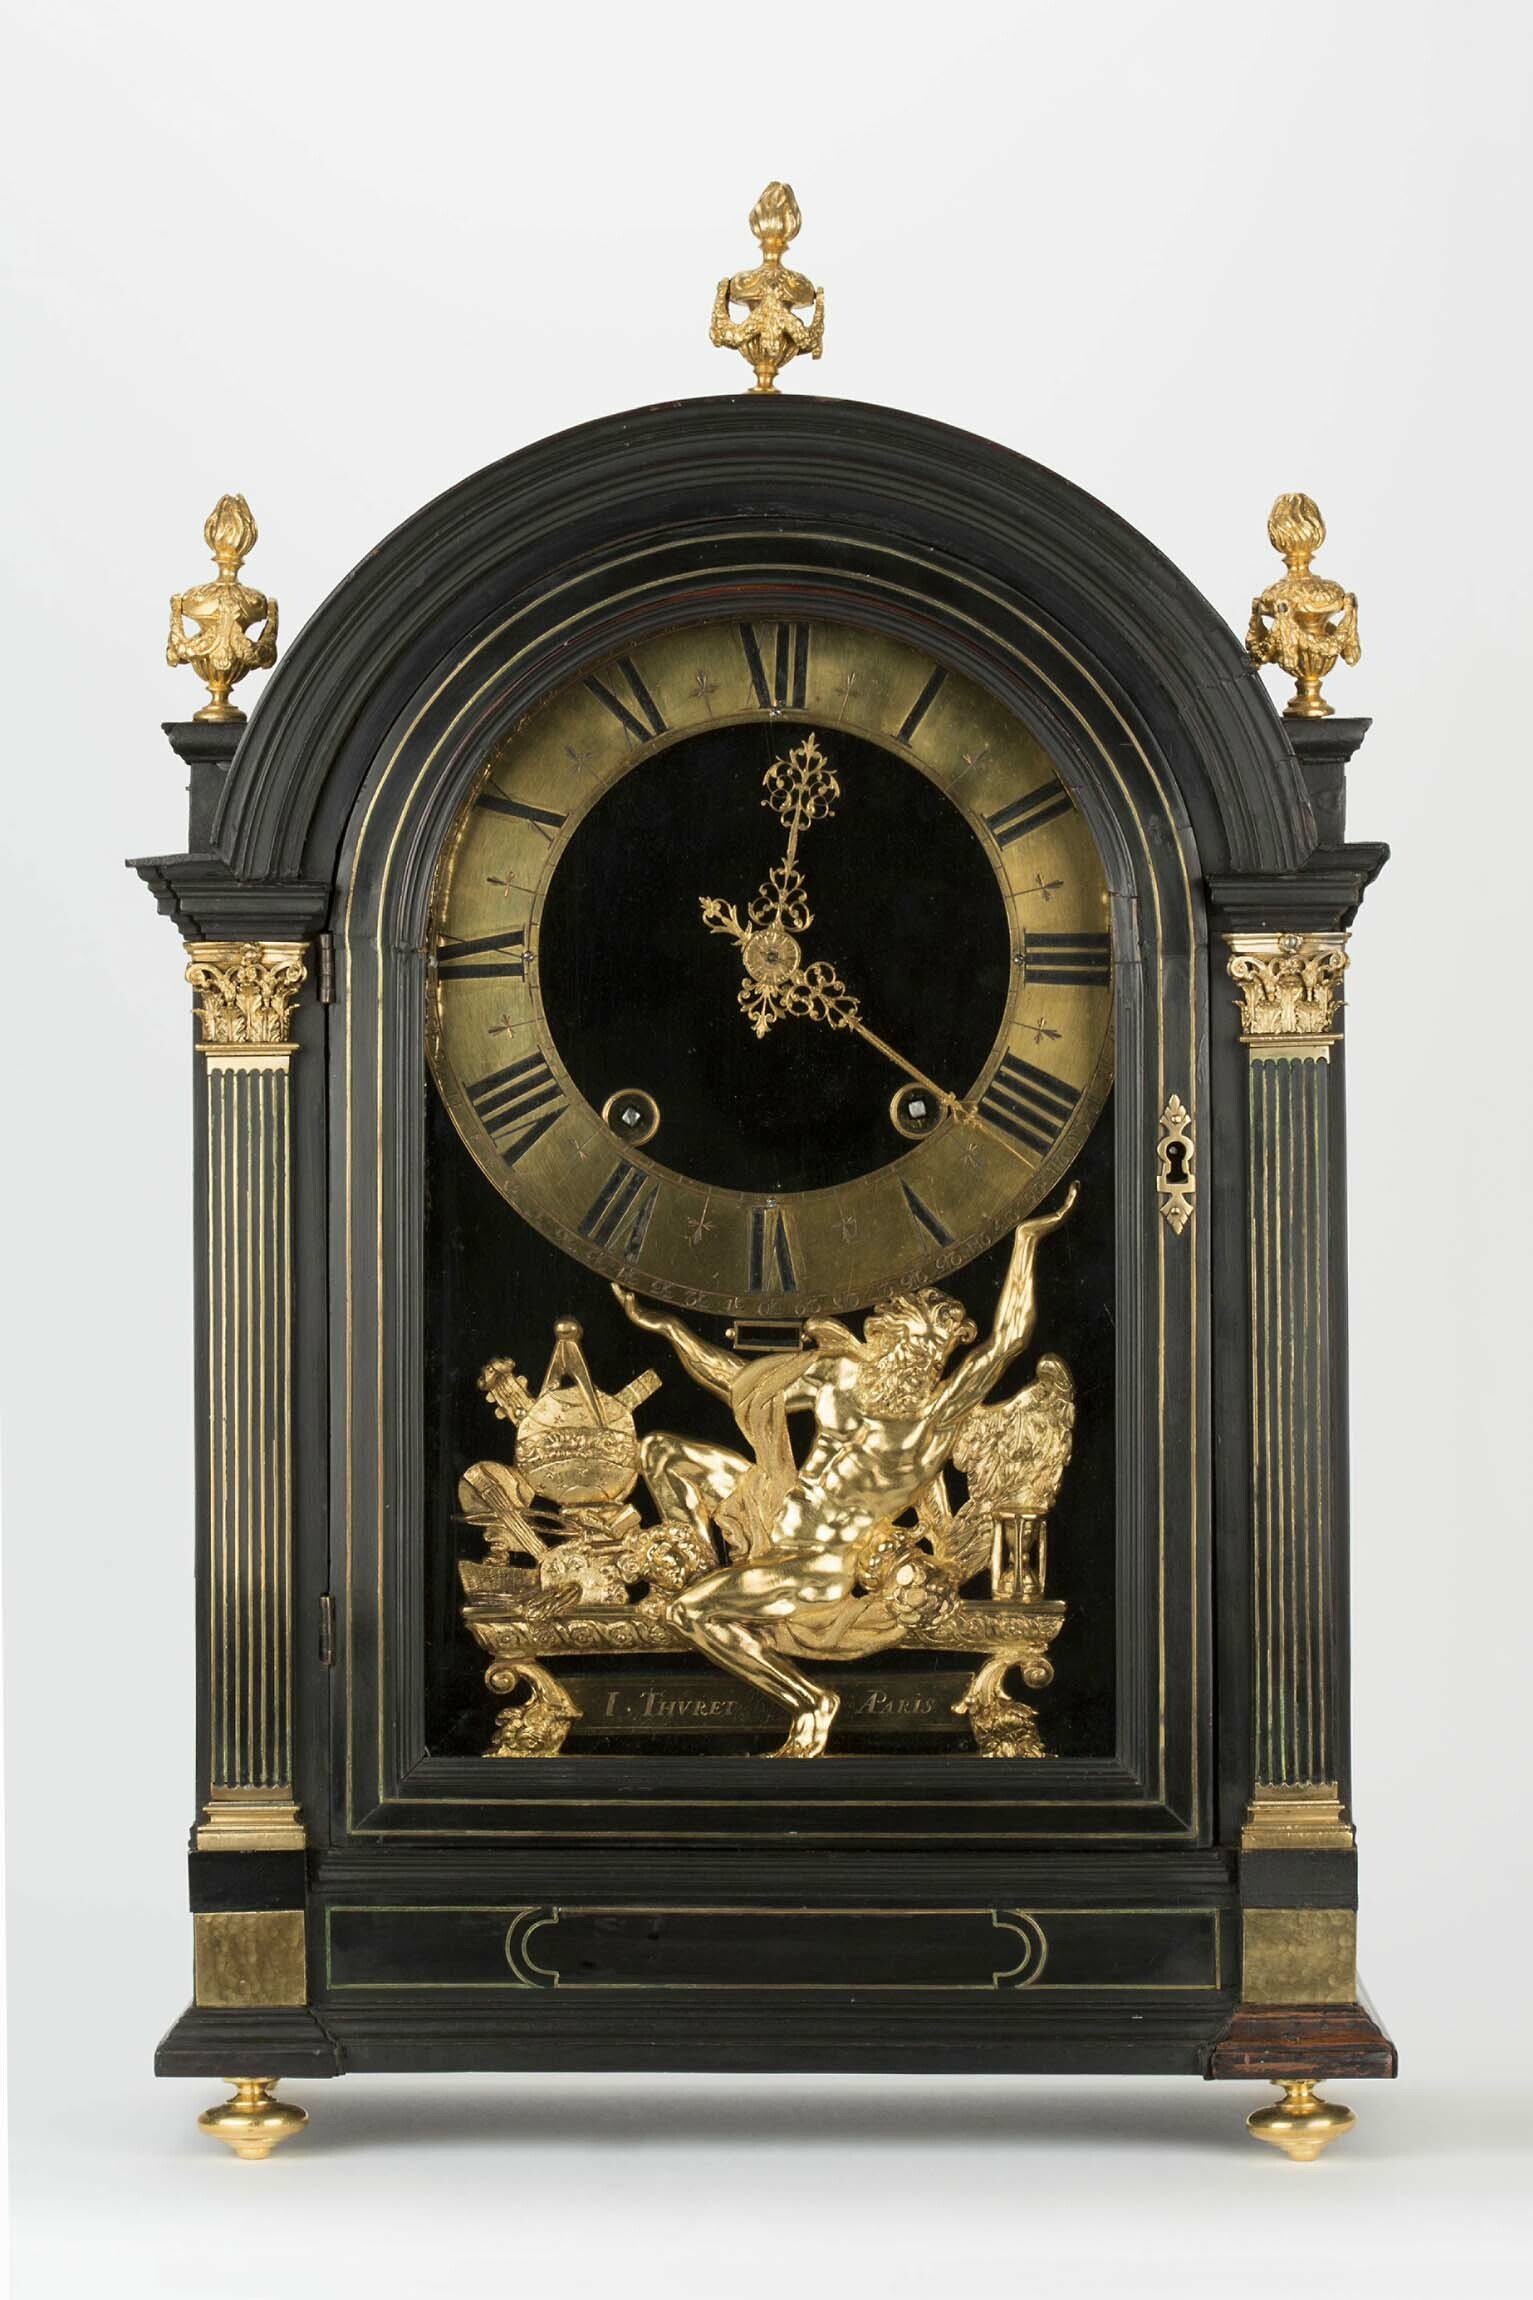 Tischuhr, Réligieuse, Isaac Thuret, Paris, um 1690 (Deutsches Uhrenmuseum CC BY-SA)